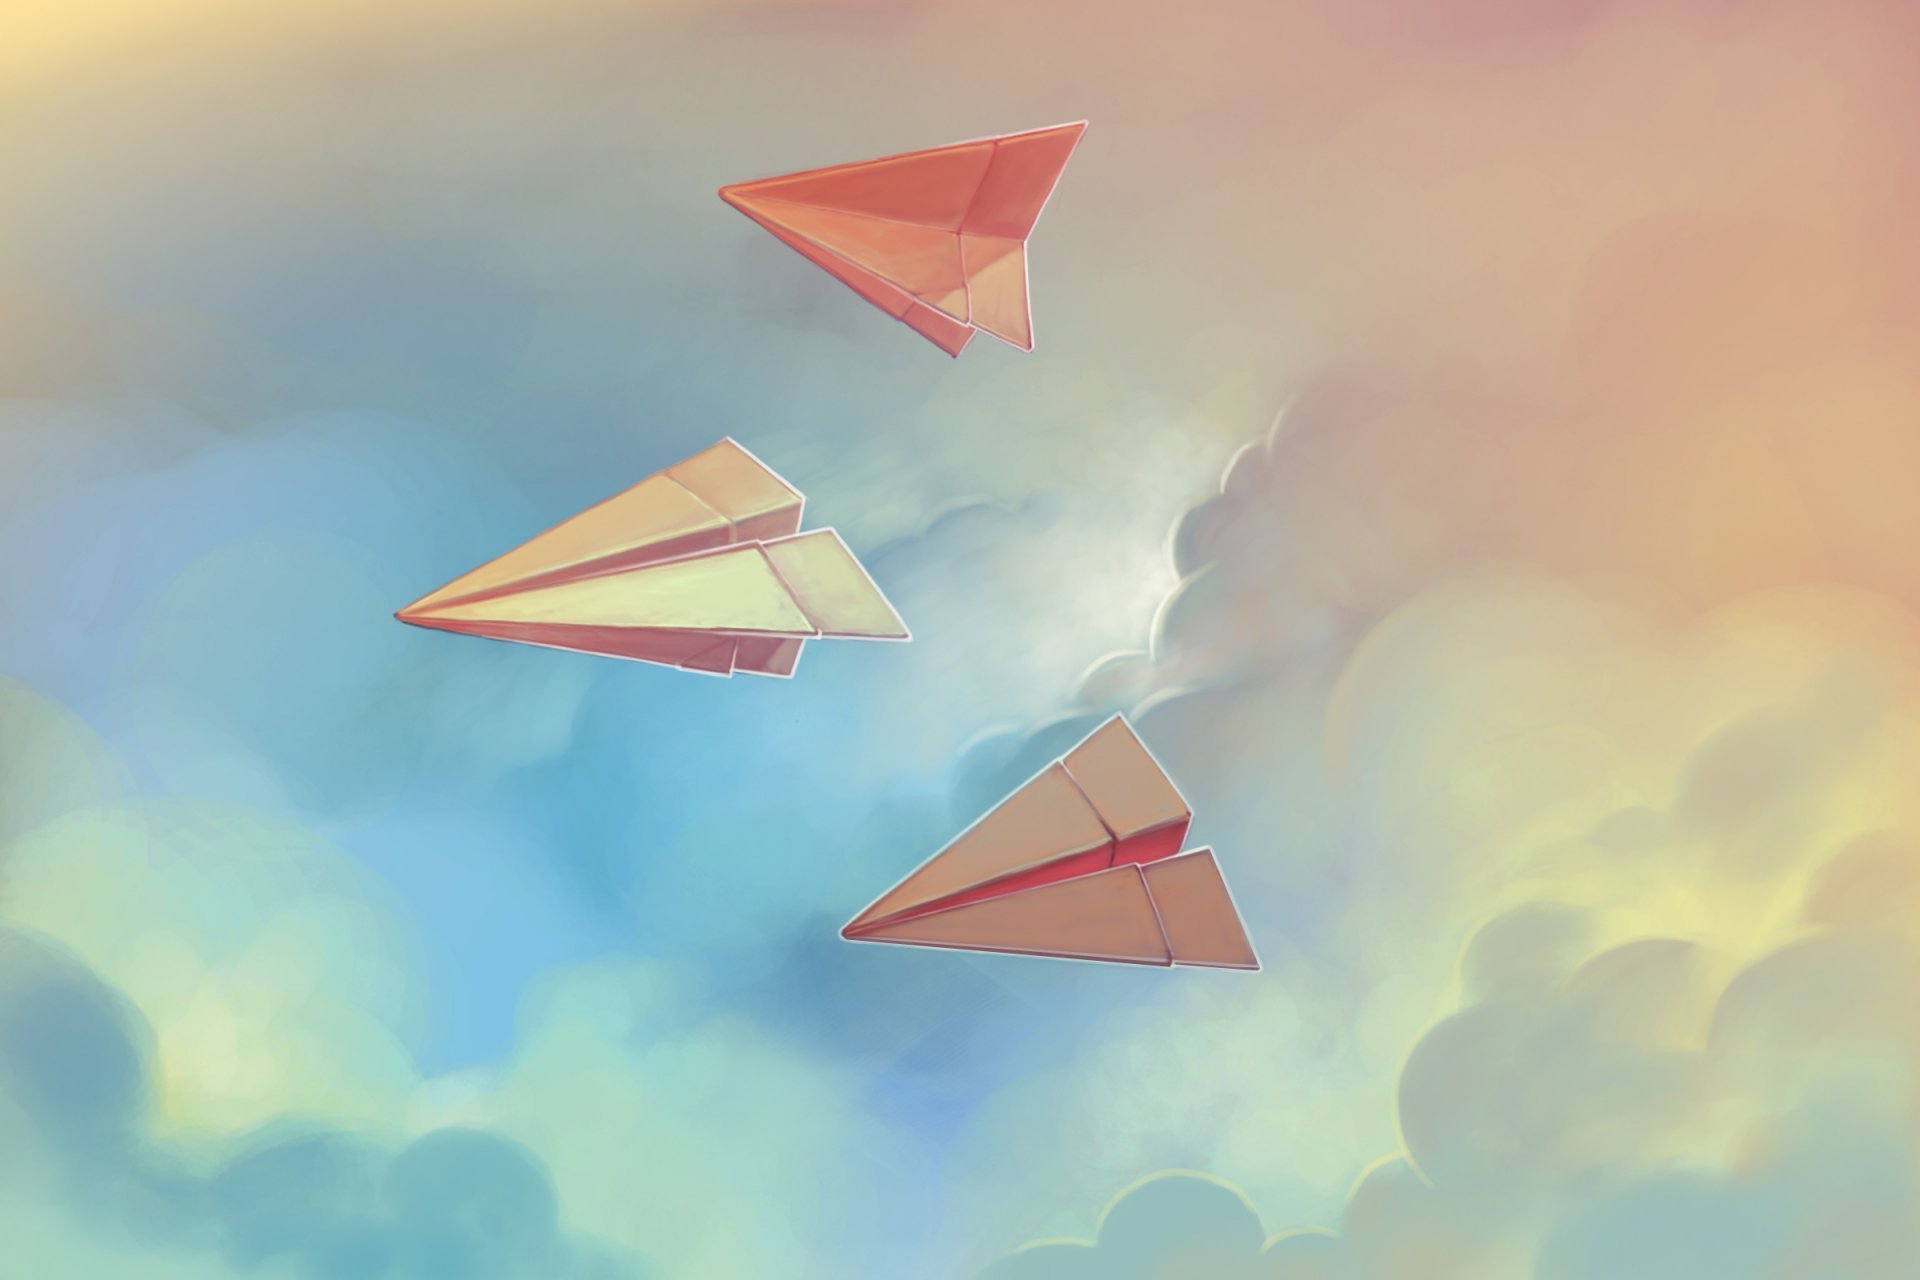 Обои на рабочий стол 23. Бумажный самолетик. Бумажный самолетик в небе. Разноцветные бумажные самолетики. Бумажный самолет арт.